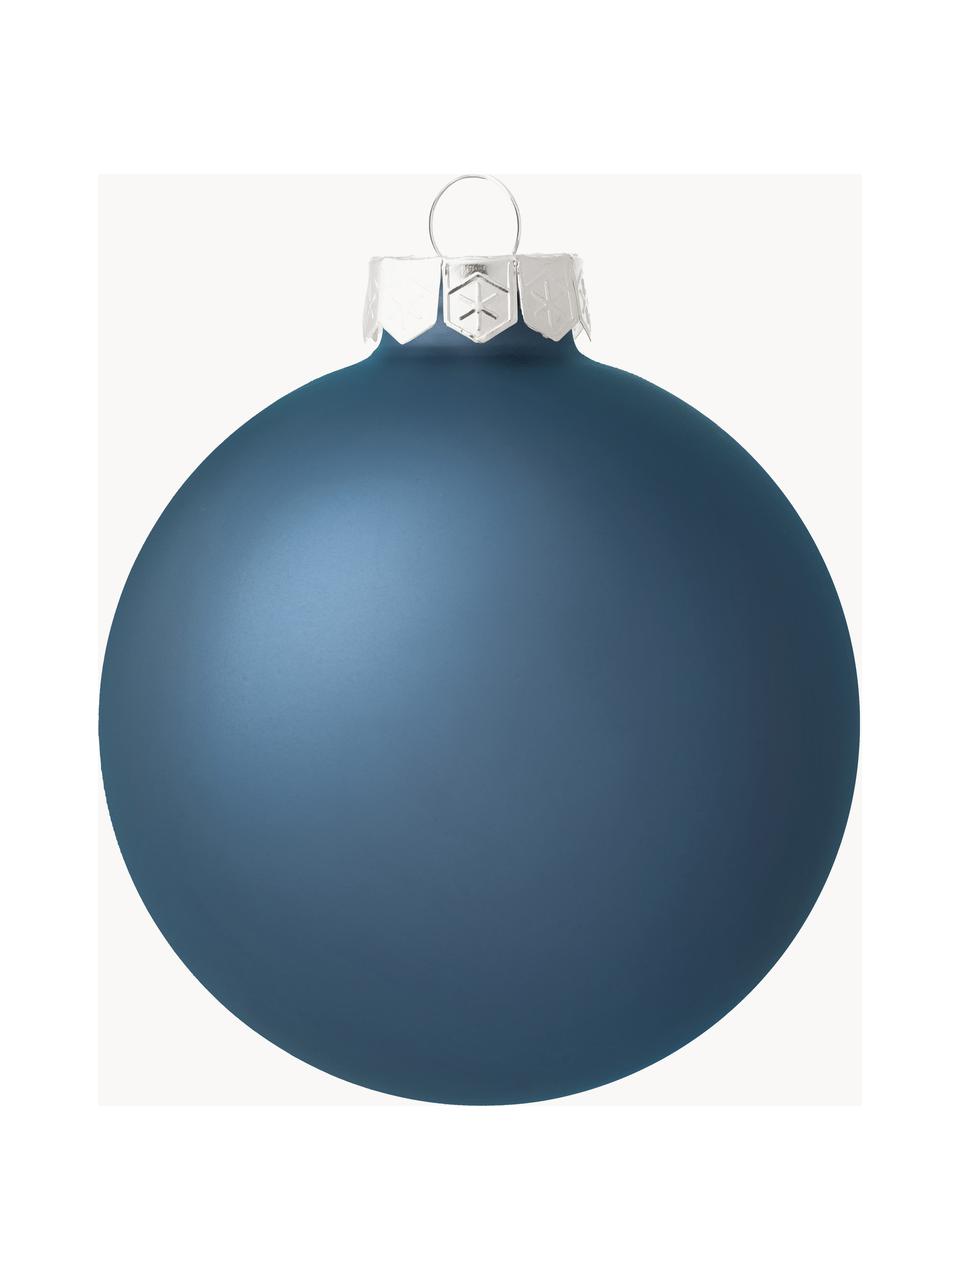 Sada vánočních ozdob lesklých/matných Evergreen, různé velikosti, Modrá, Ø 8 cm, 6 ks